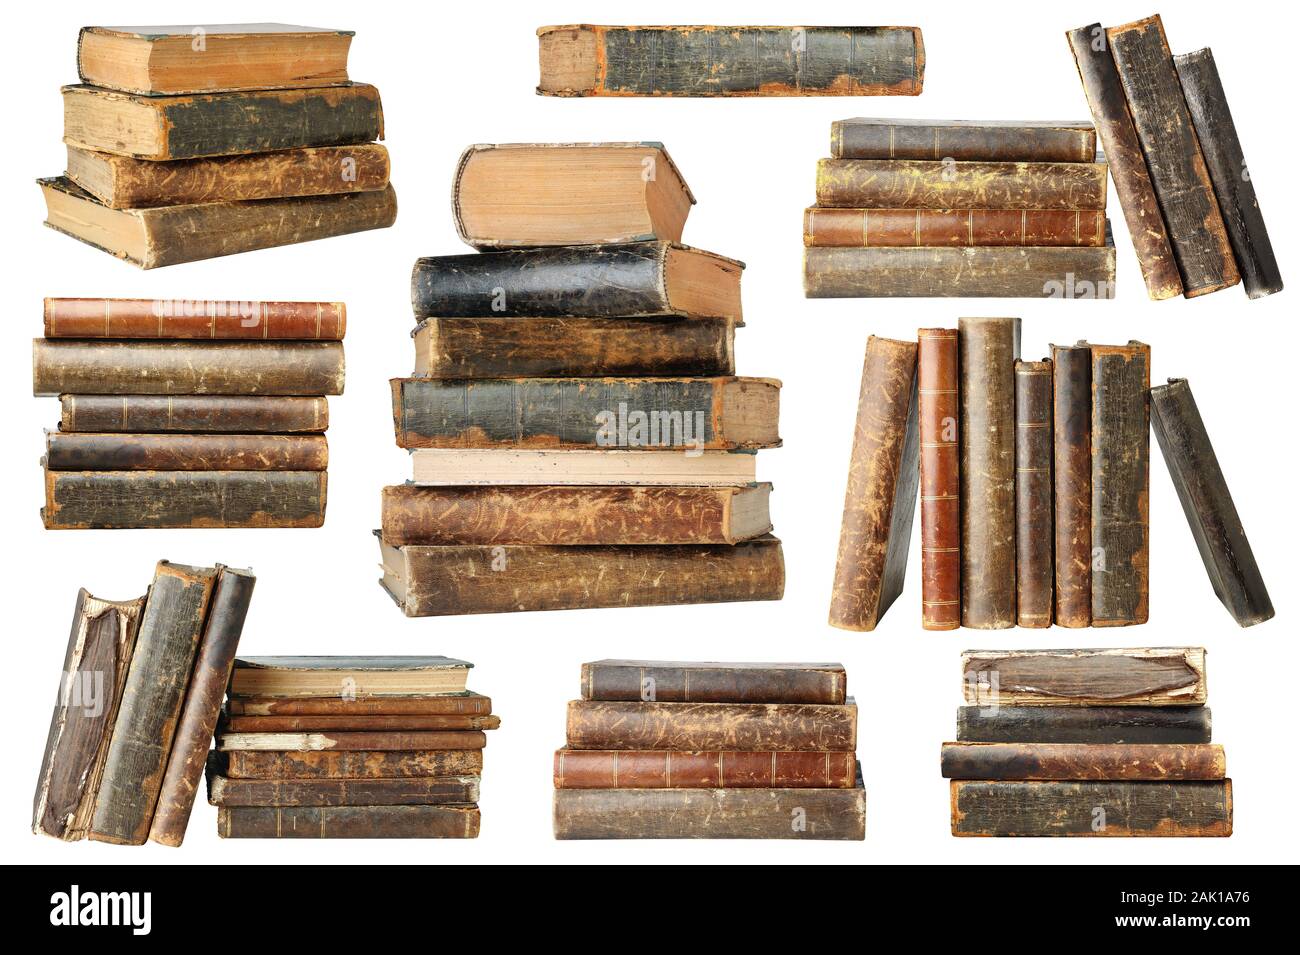 Vieux livres isolés. Collection de vieux livres en piles et piles isolé sur fond blanc avec clipping path Banque D'Images